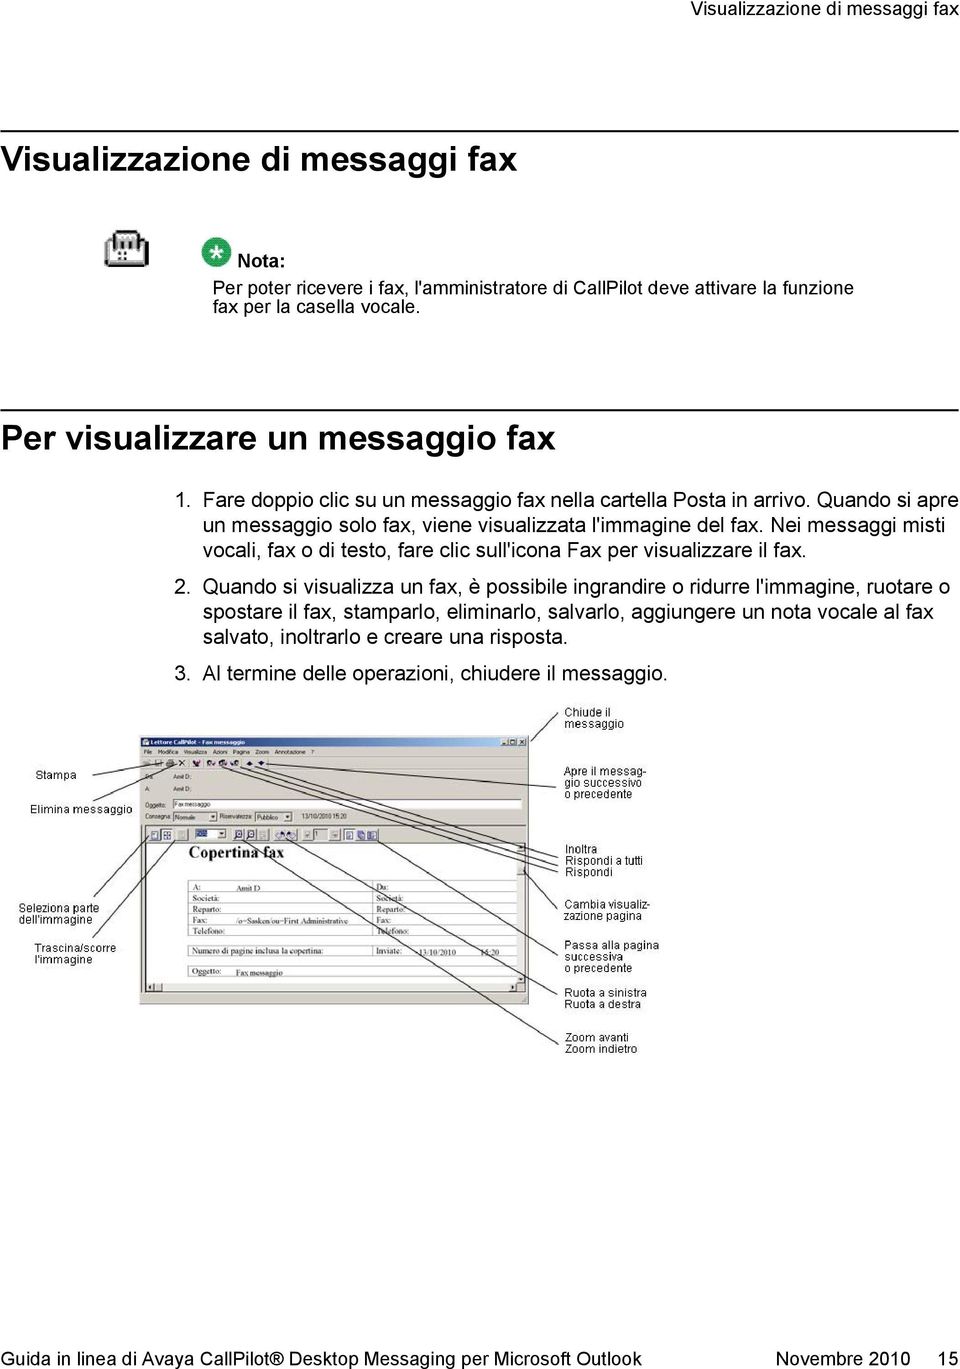 Nei messaggi misti vocali, fax o di testo, fare clic sull'icona Fax per visualizzare il fax. 2.